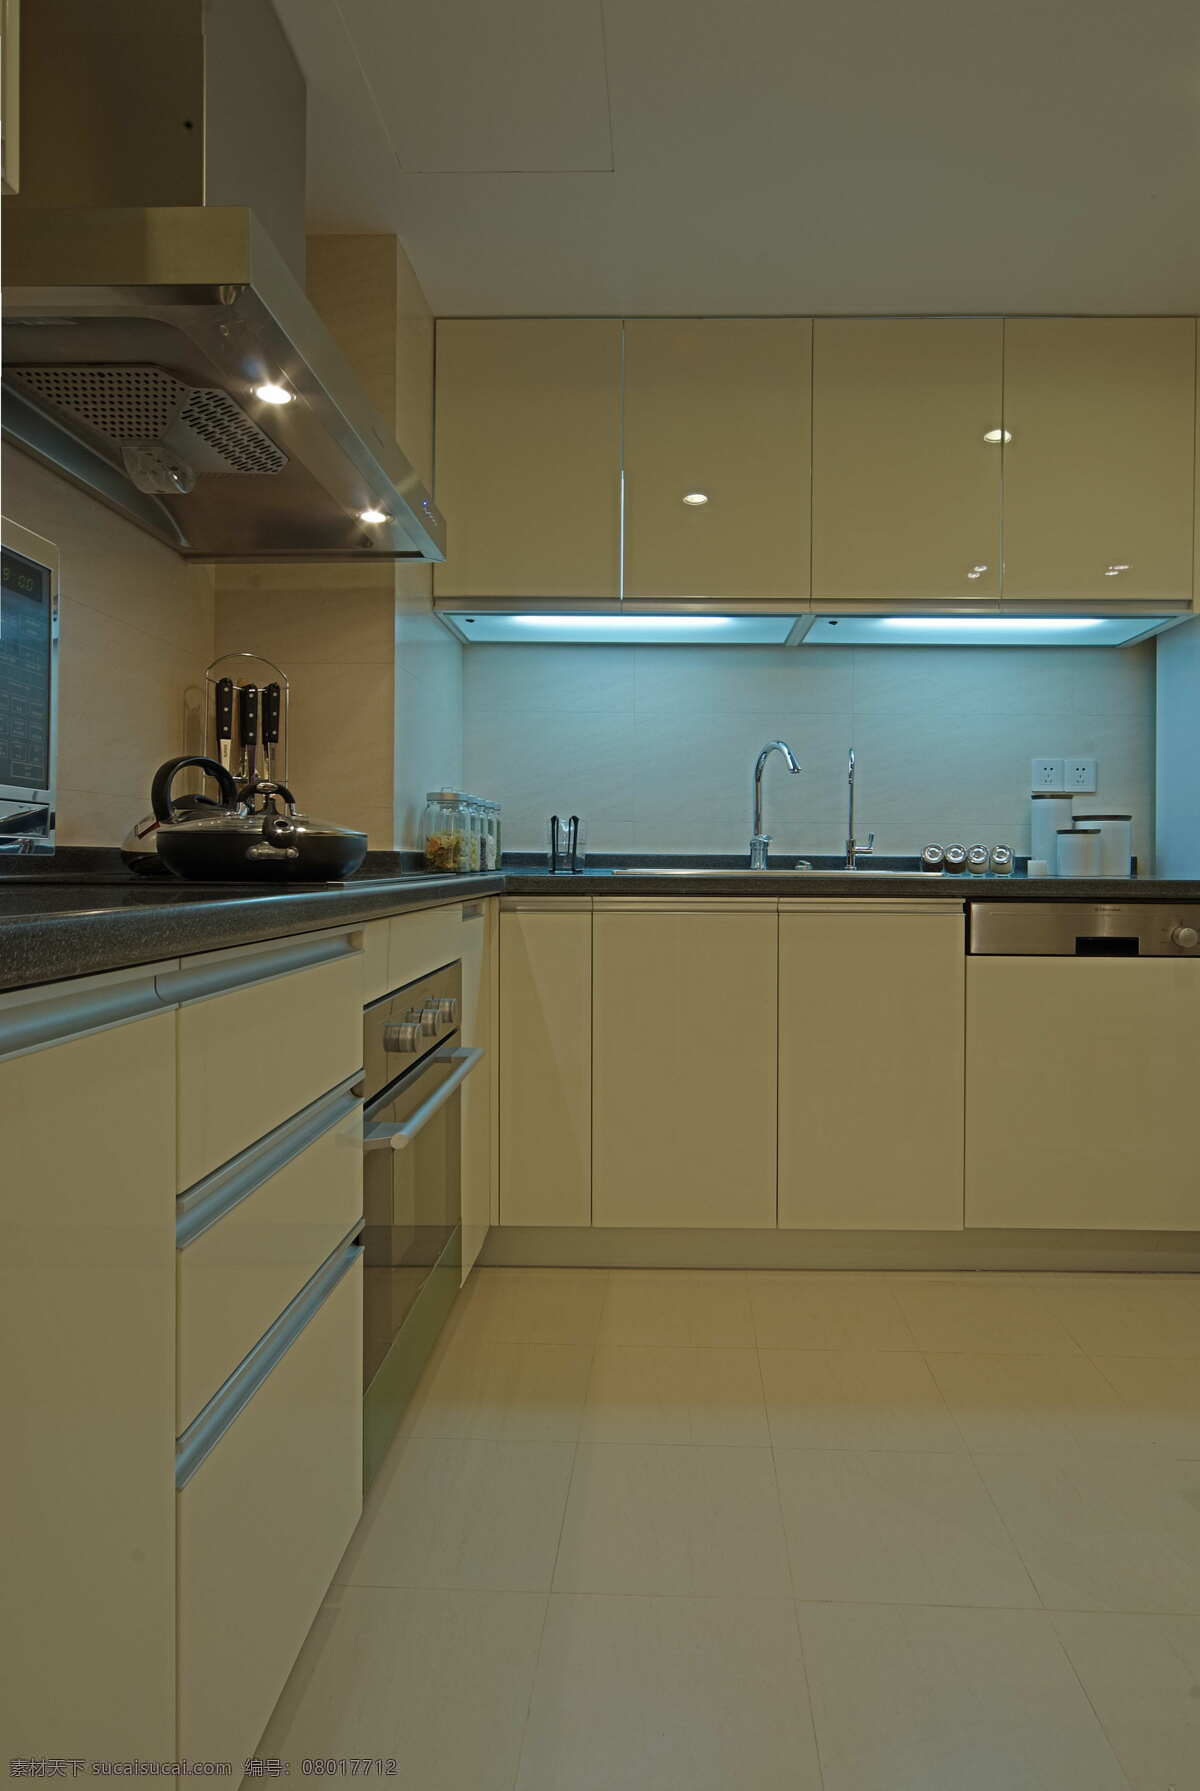 l 型 现代 厨房 收纳柜 简约 室内设计 效果图 料理台 白色 调 灶台 抽油烟机 洗菜池 风 家装